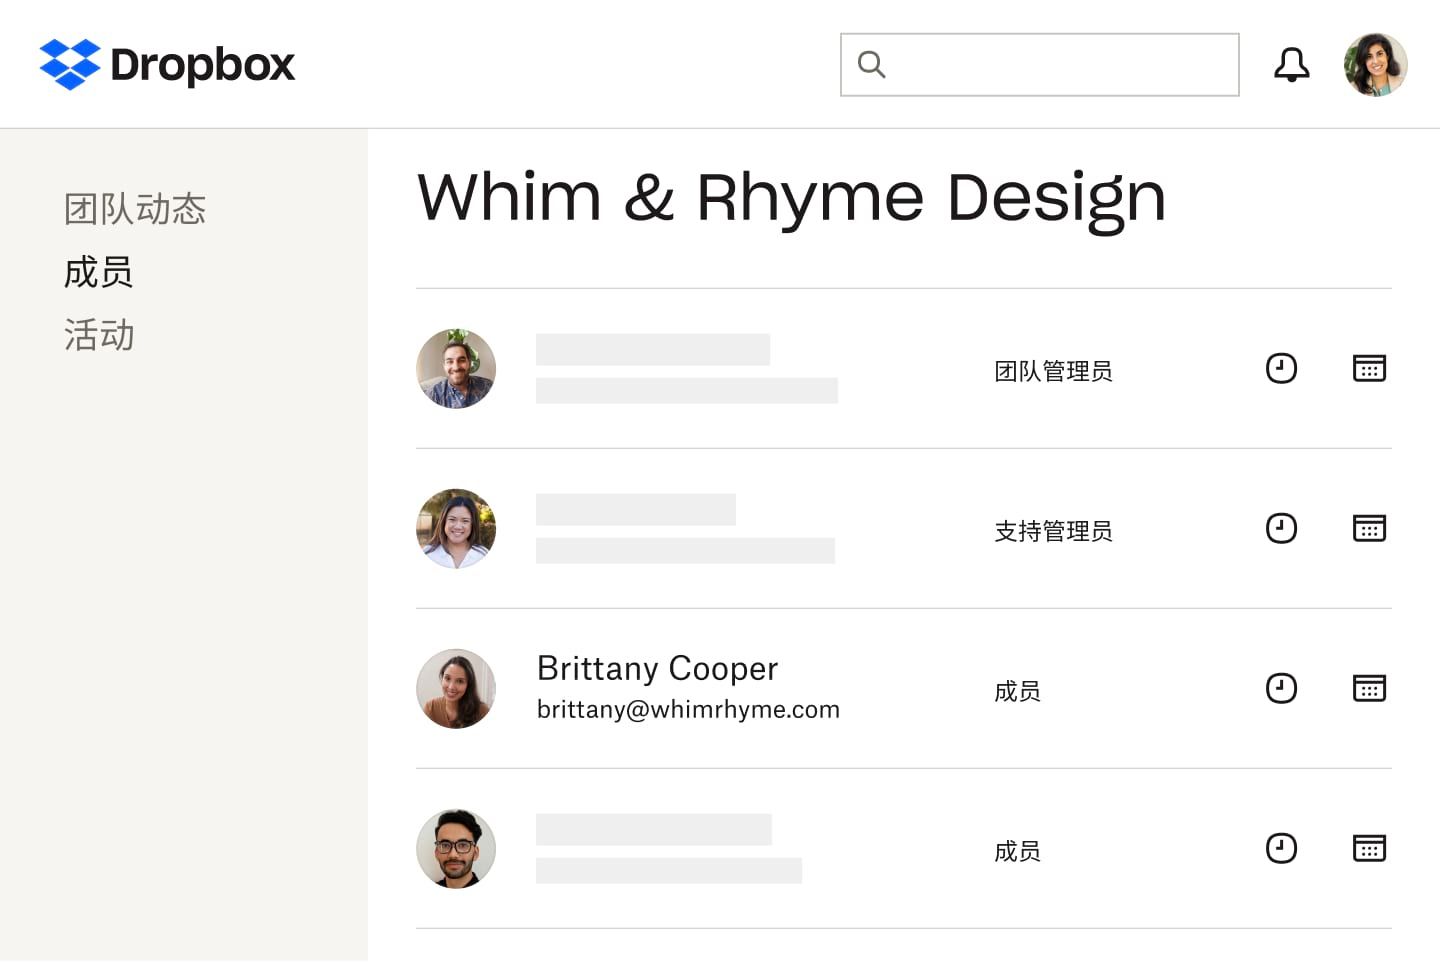 团队成员的列表以及他们对共享 Dropbox 帐户的不同访问级别，包括“团队管理员”、“支持管理员”和“成员” 